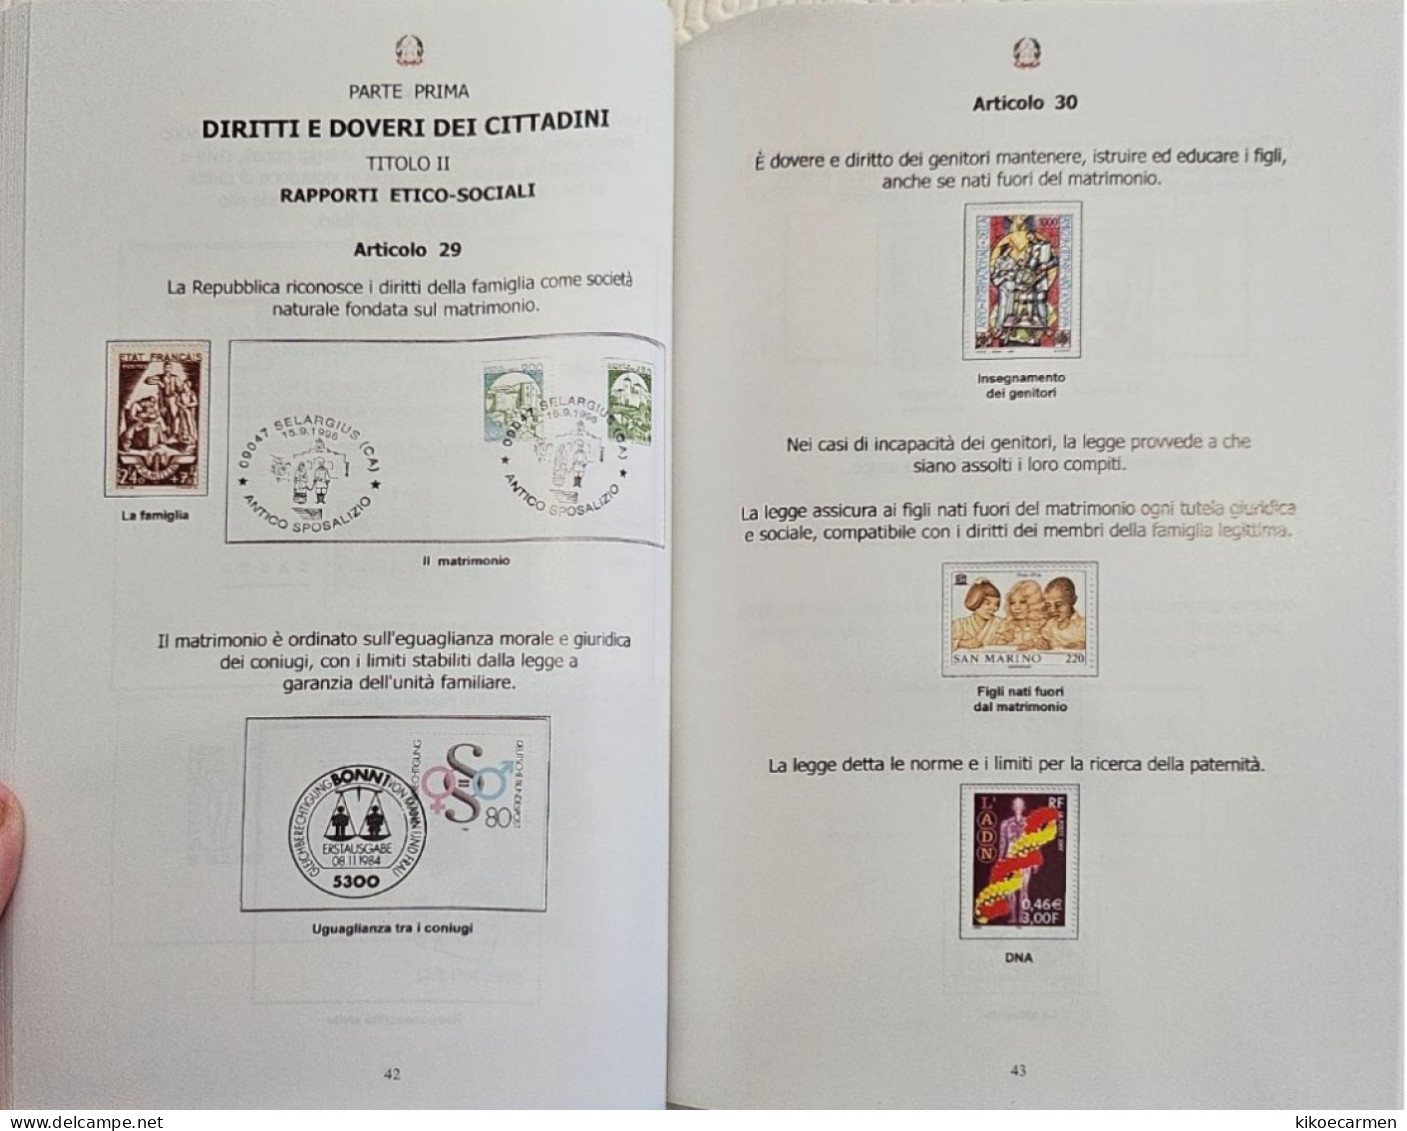 Costituzione Italiana Attraverso La Filatelia CIFT Vastophil 2014 LAW Thematic Philately Book 158 Pages Coloured - Topics